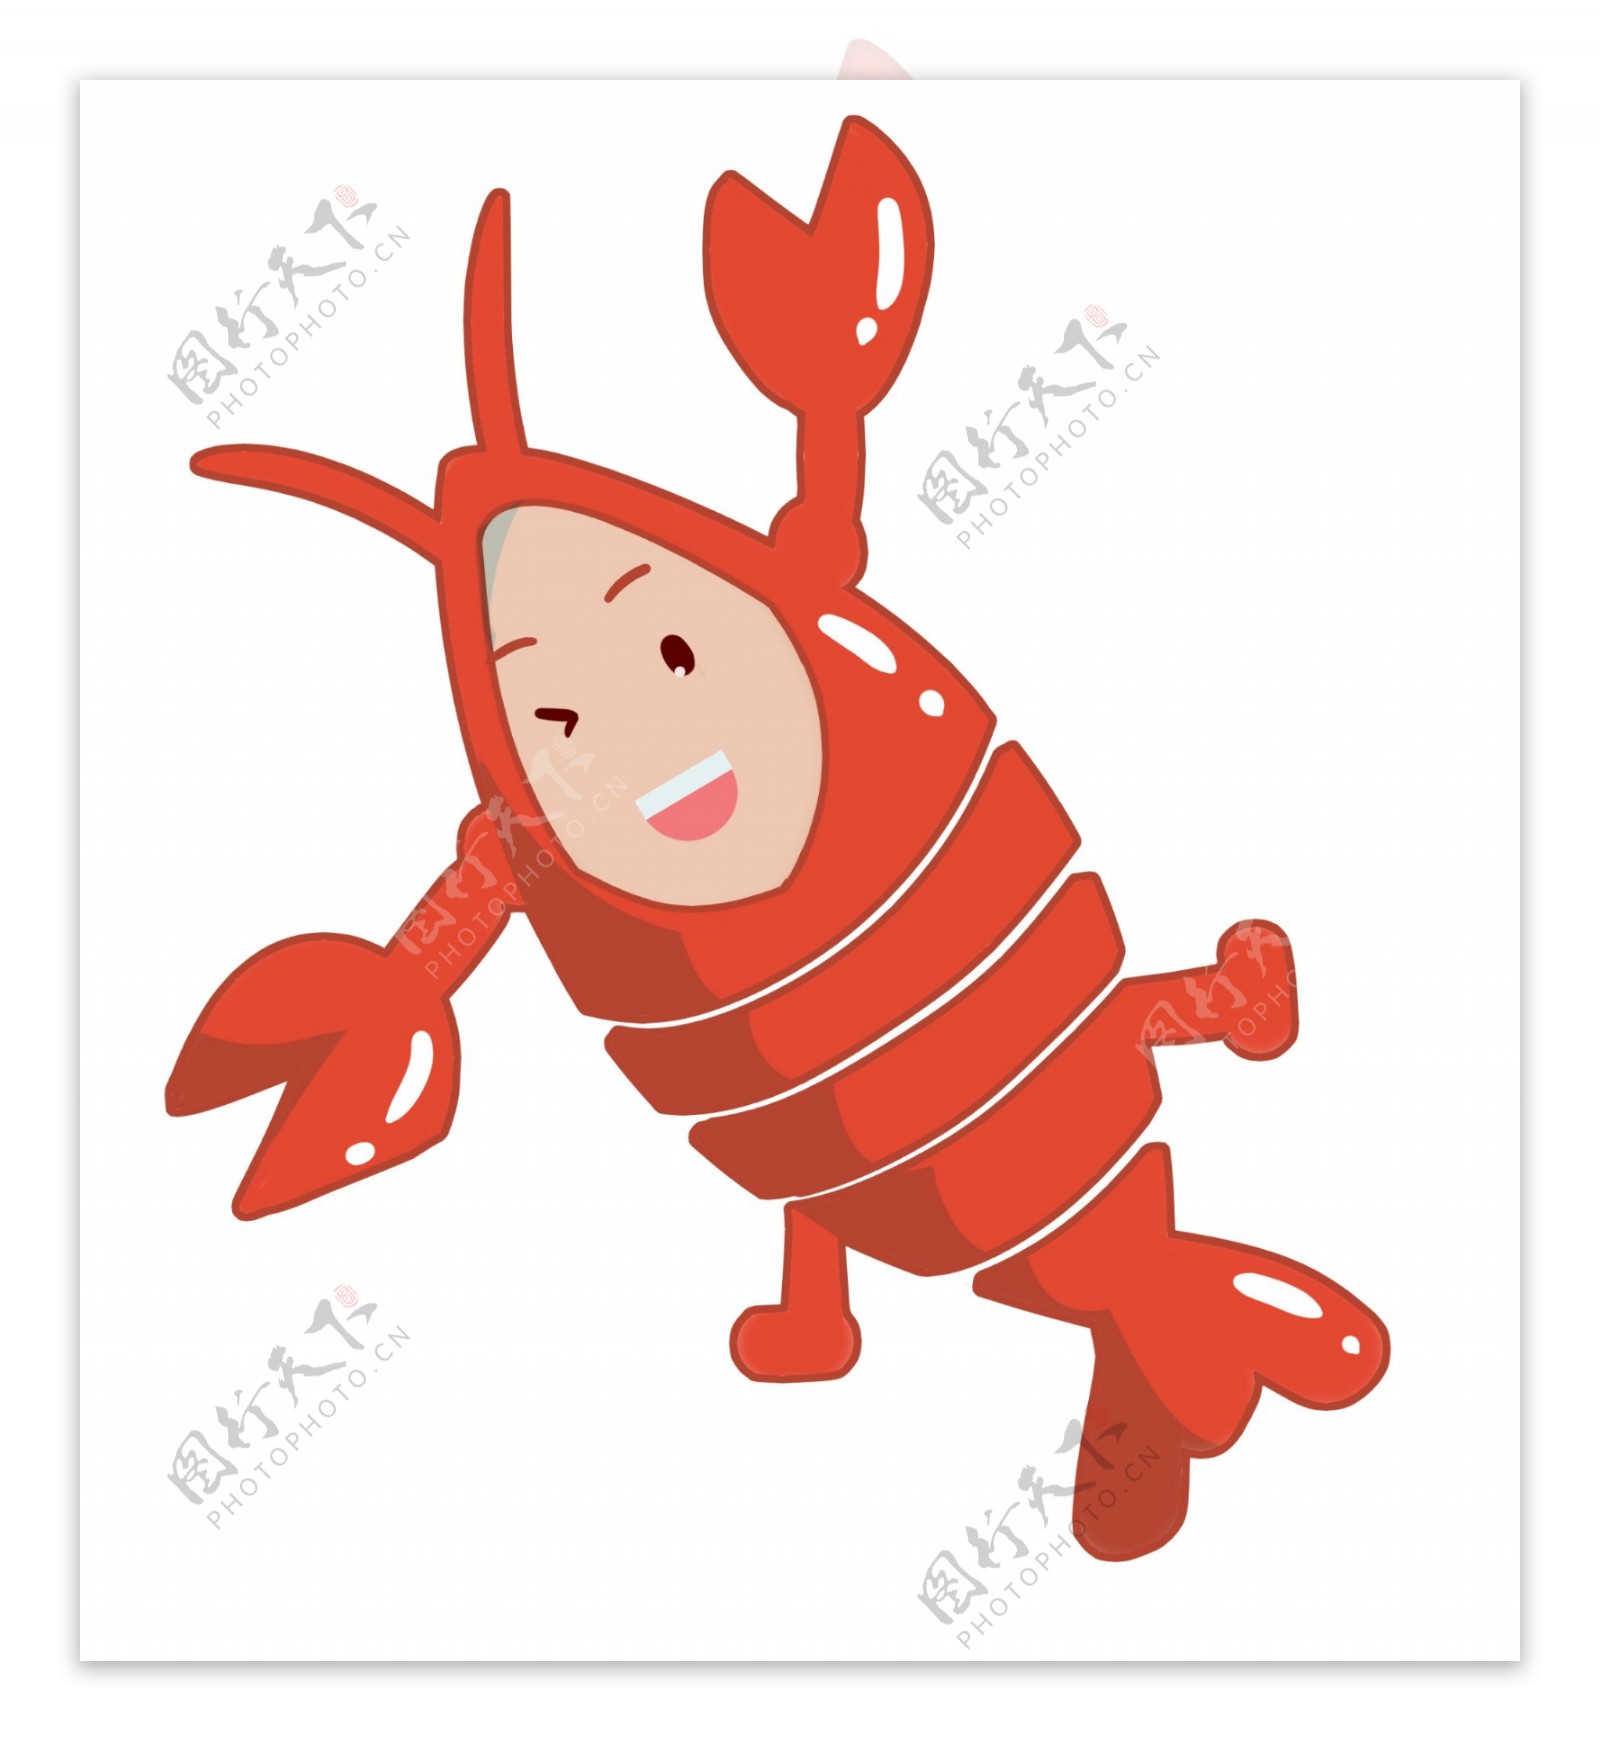 调皮的龙虾装饰插画